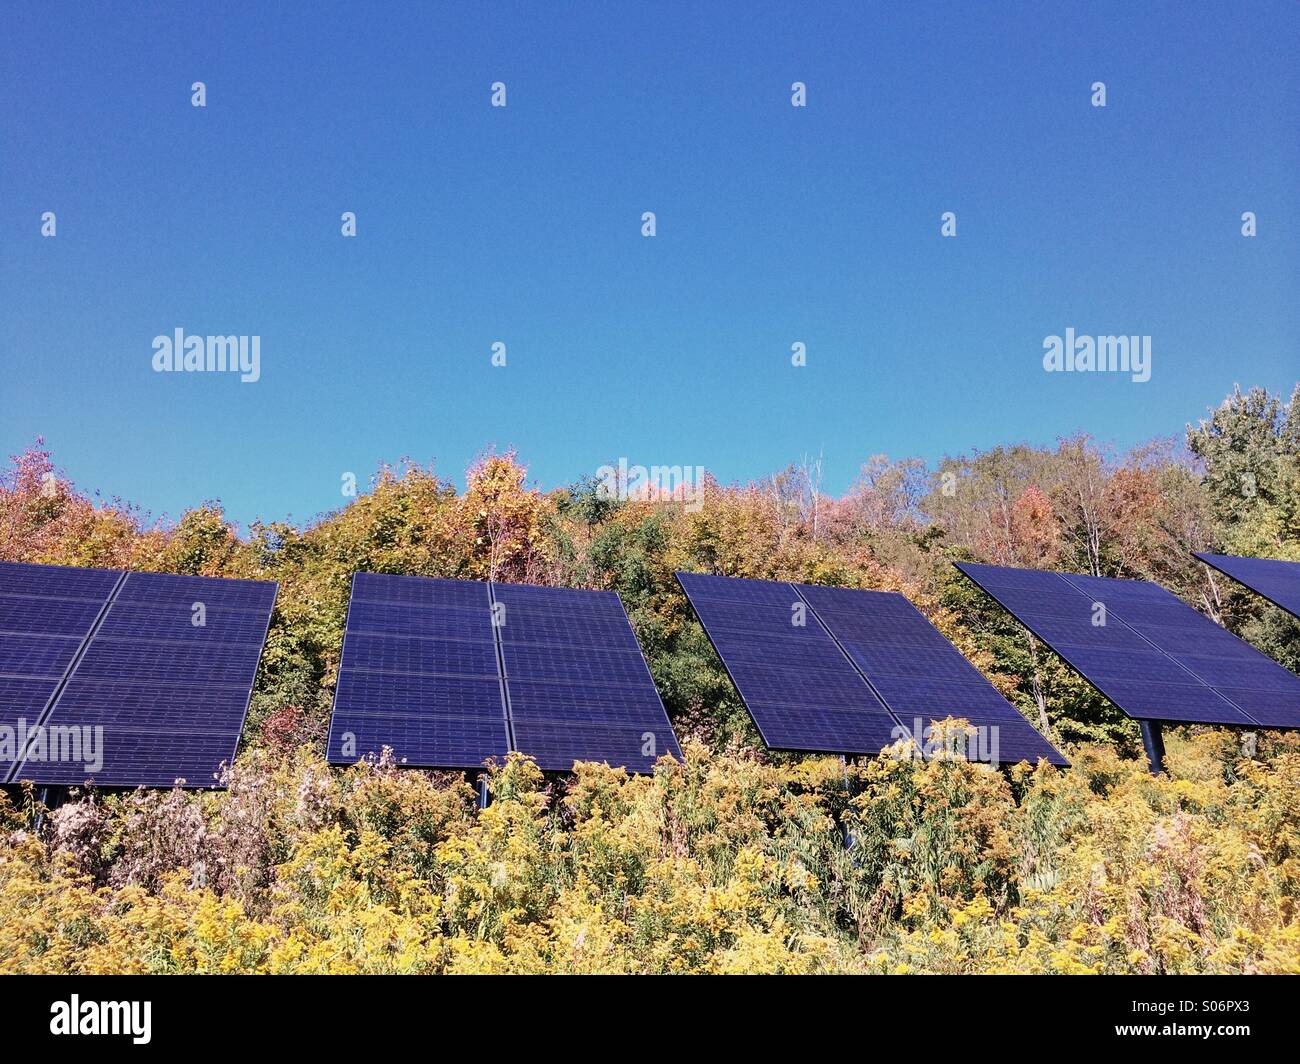 An array of solar panels on rural farmland in the Catskills, NY. Stock Photo